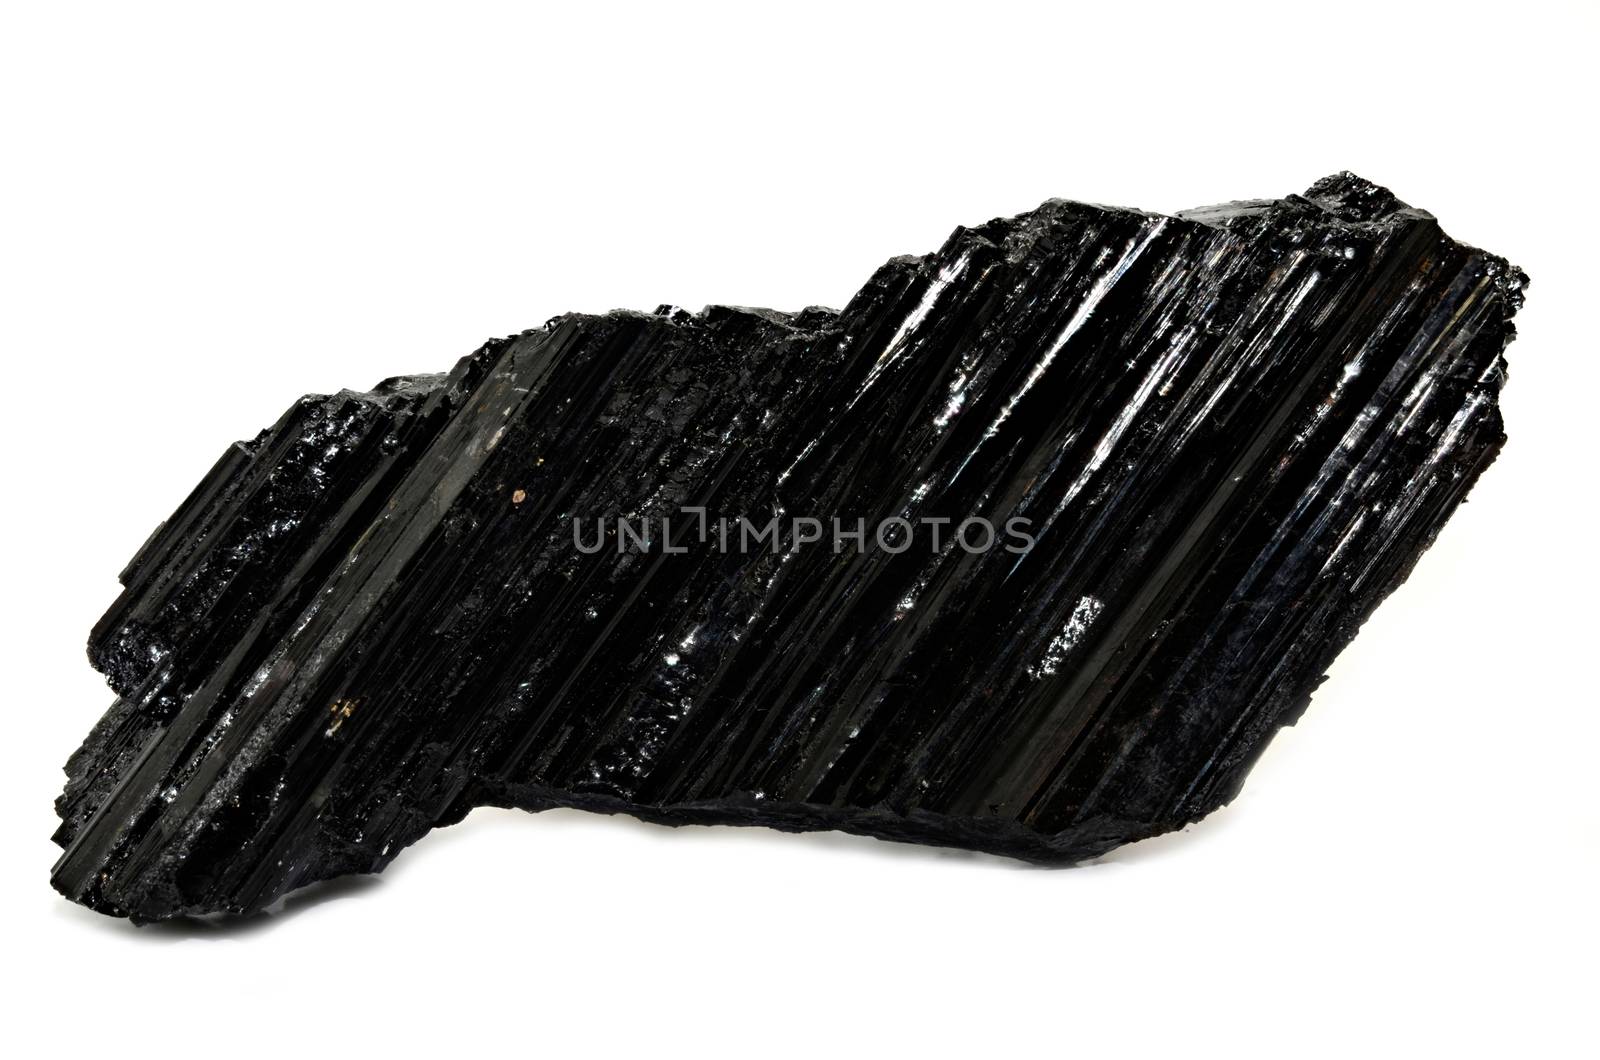 Black Tourmaline-Shorl nature specimen by stellar